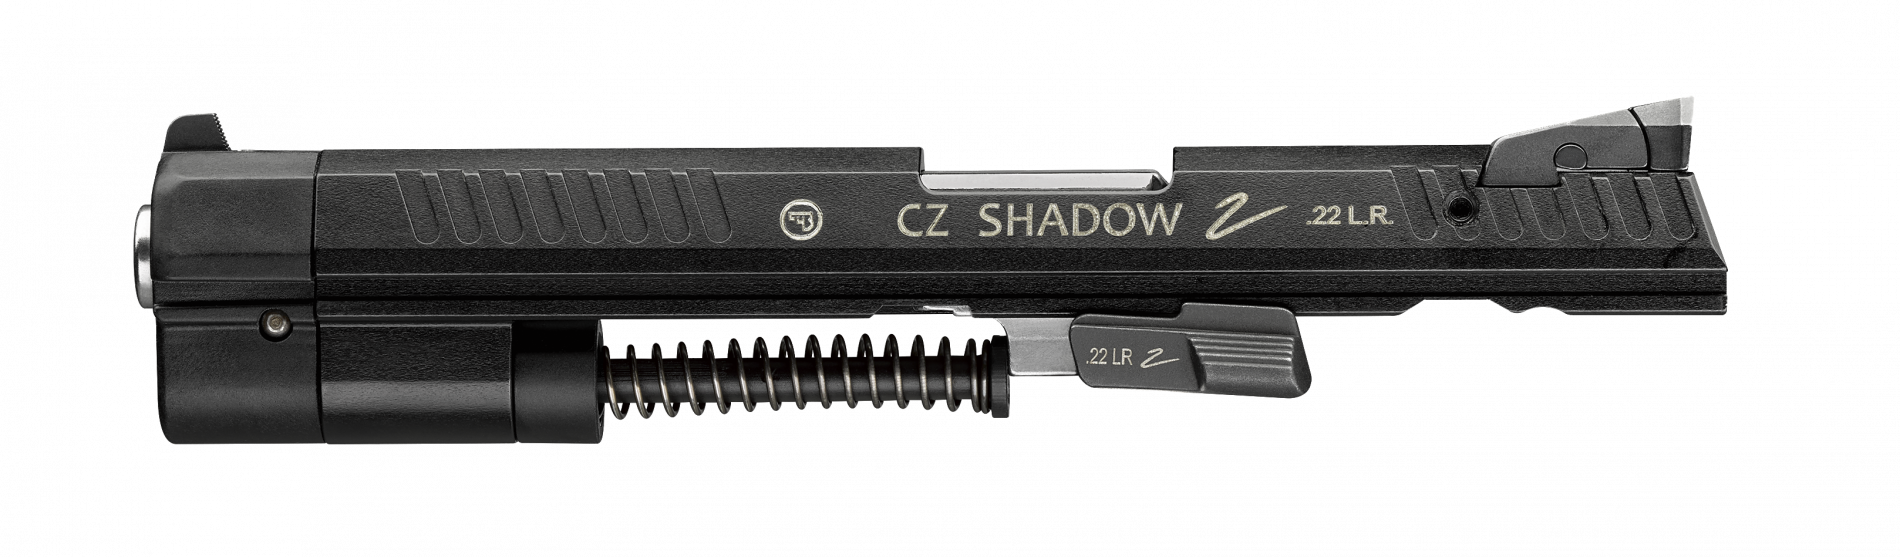 CZ Shadow 2 Cadet Adapter 22LR 